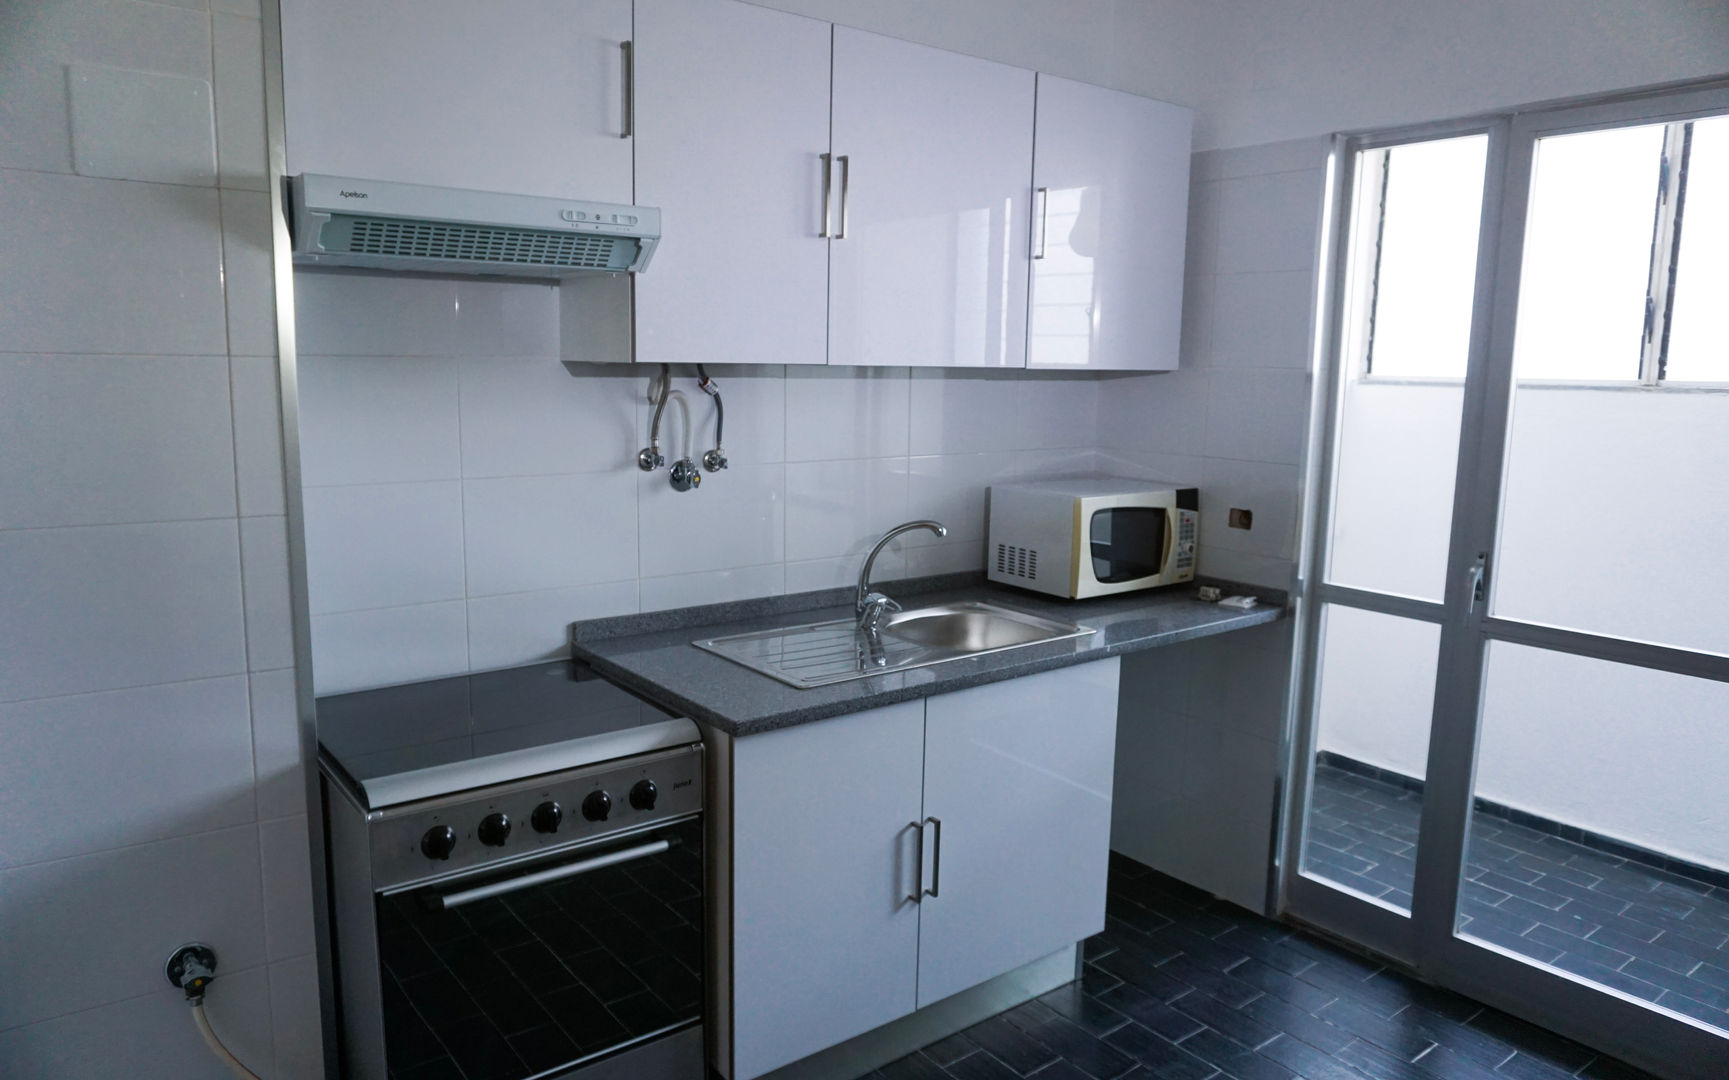 Cozinha homify Cozinhas modernas cozinha,armários,revestimento,remodelação,Oeiras,apartamento,